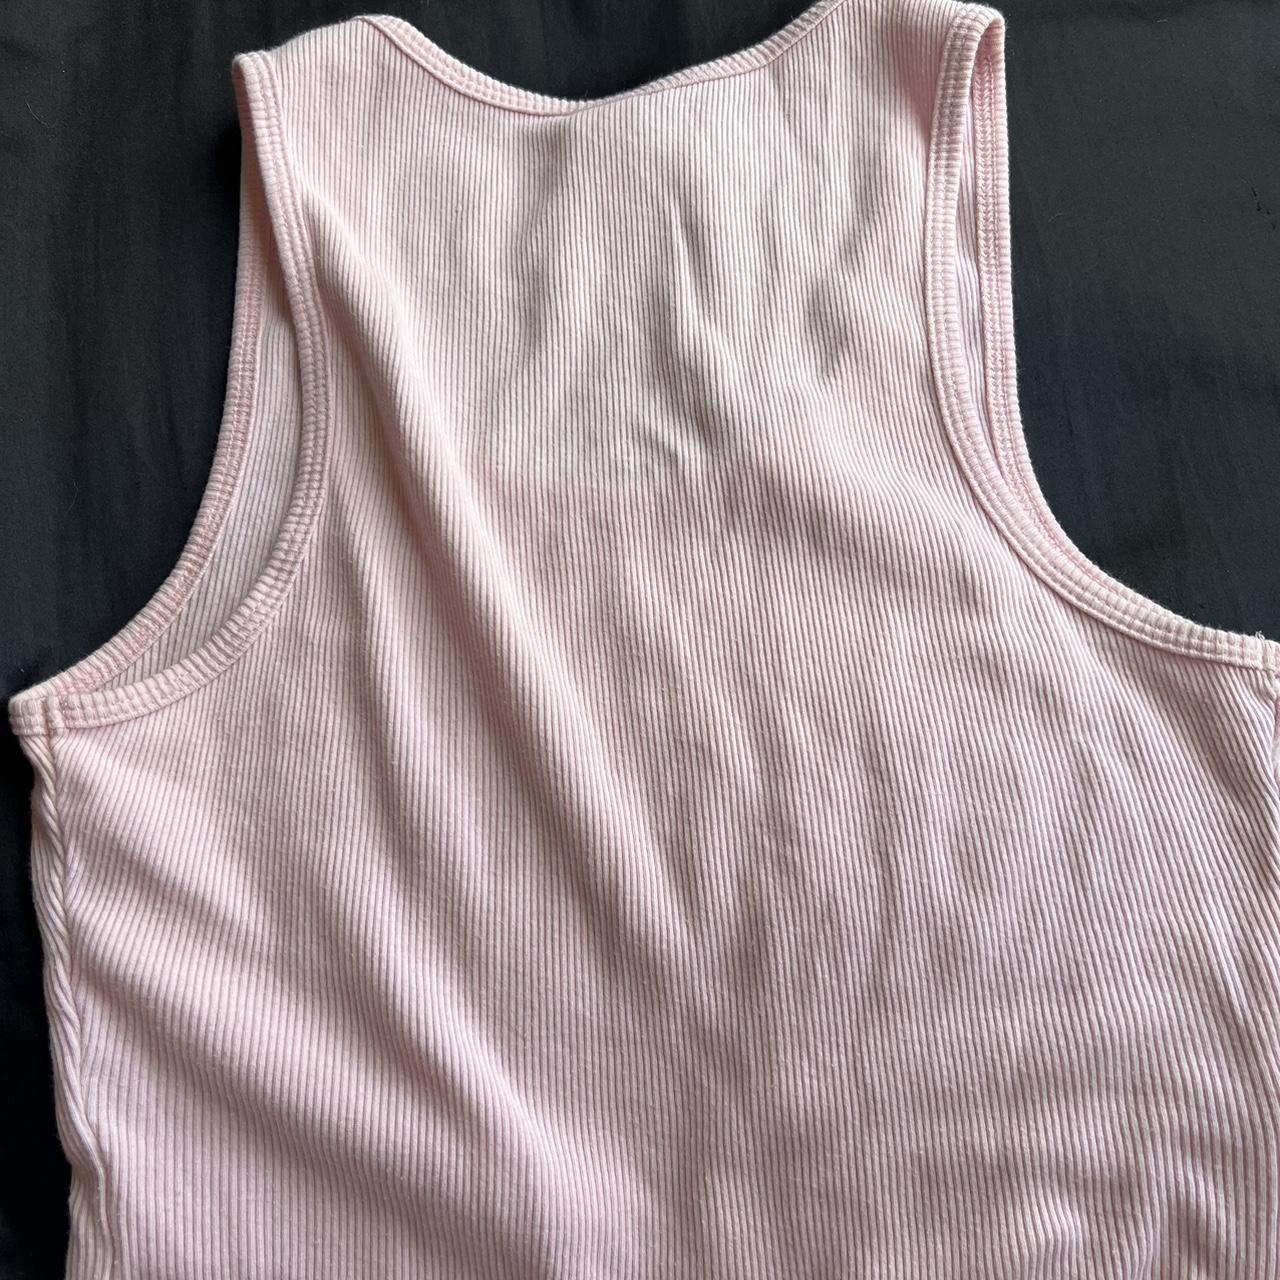 Women's Pink Vest | Depop